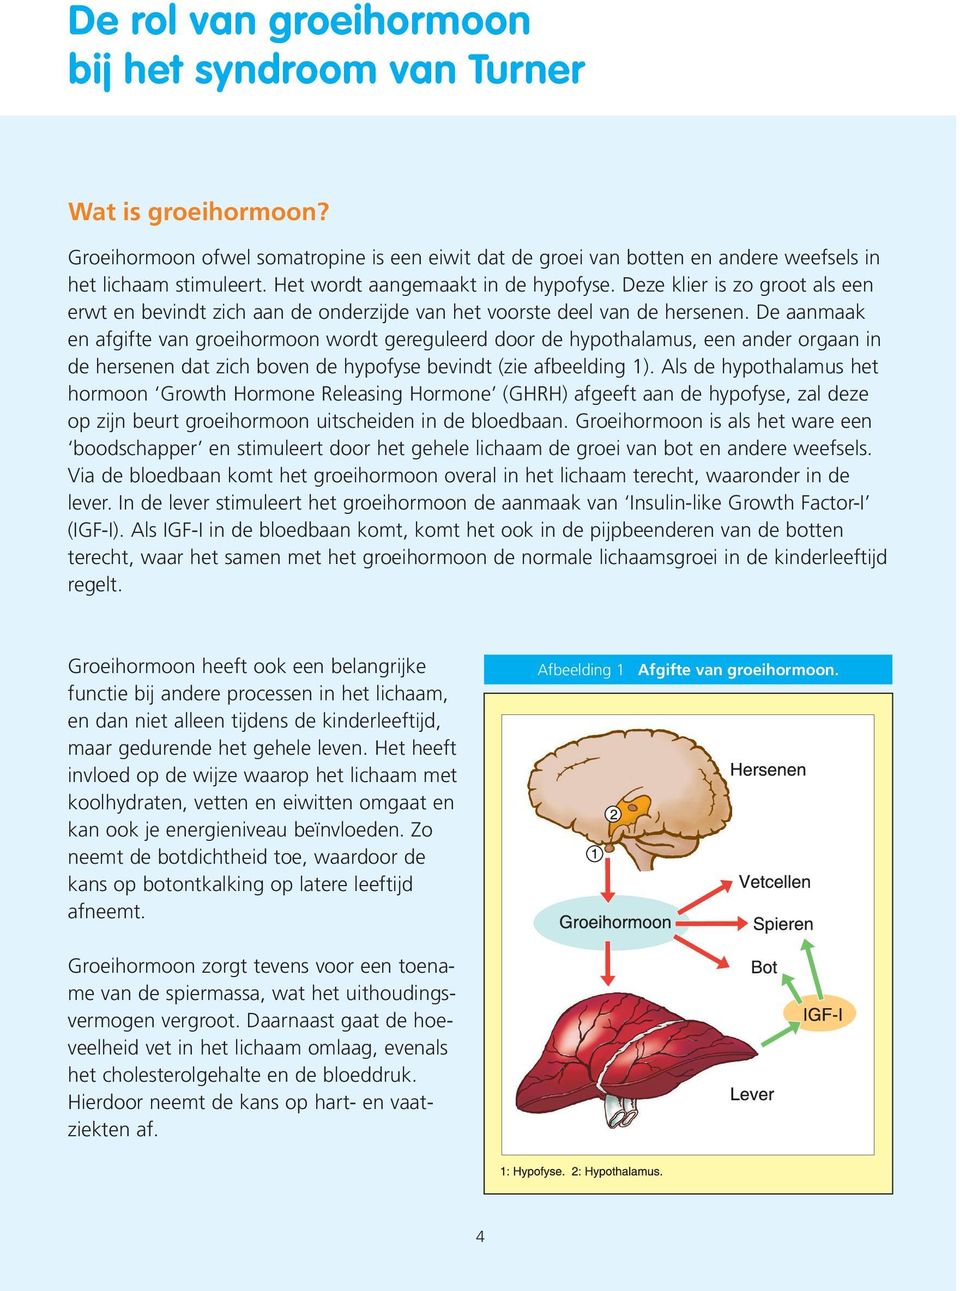 De aanmaak en afgifte van groeihormoon wordt gereguleerd door de hypothalamus, een ander orgaan in de hersenen dat zich boven de hypofyse bevindt (zie afbeelding 1).